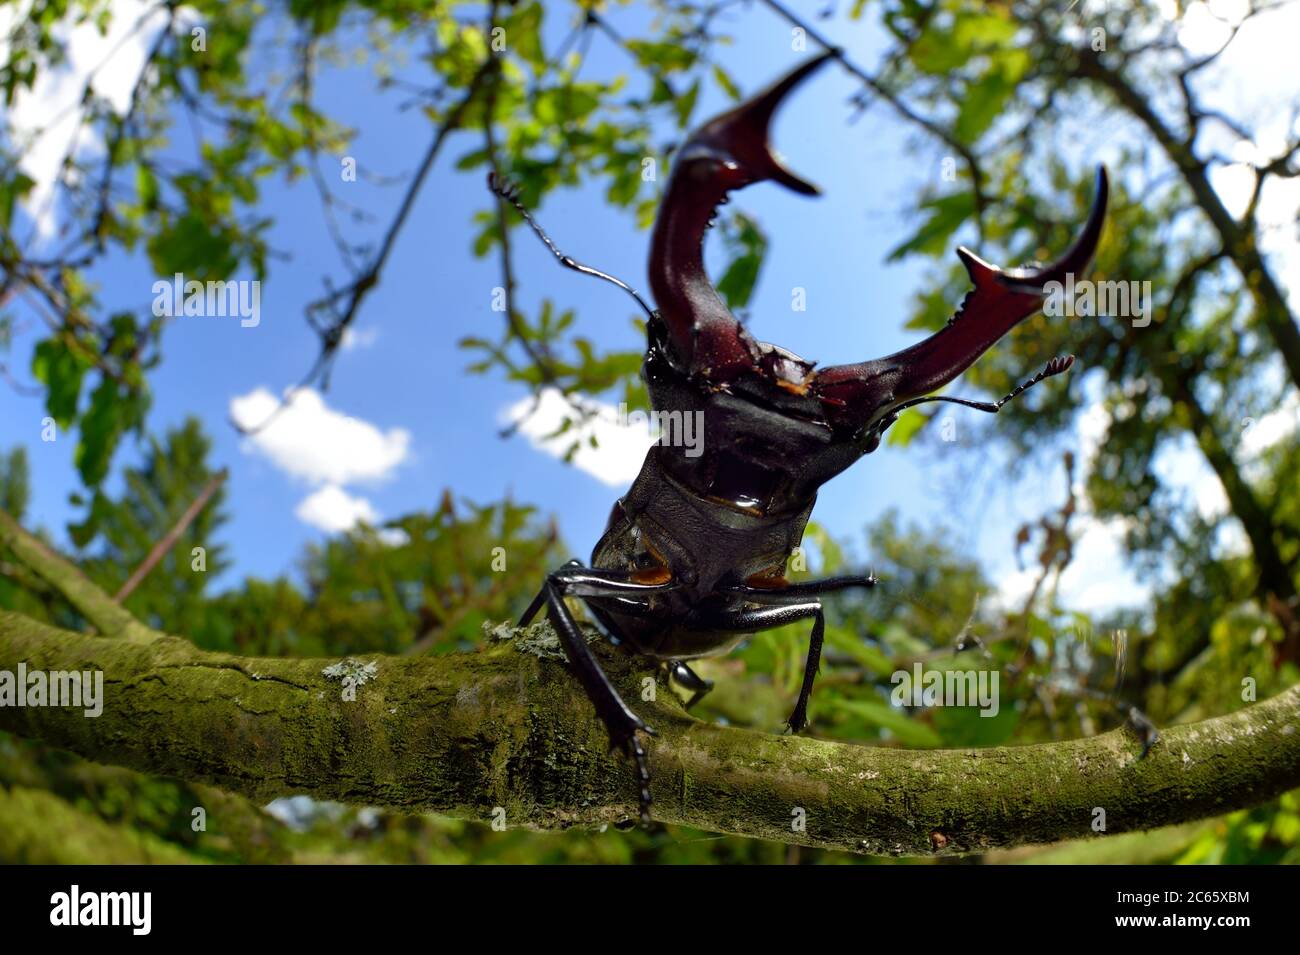 Rivales escarabajo Stag (Lucanus cervus) dos machos mostrando comportamiento agresivo en la rama de roble, Reserva de la Biosfera 'Niedersächsische Elbtalaue' / Valle del Elba bajo Saxoniano, Alemania Foto de stock